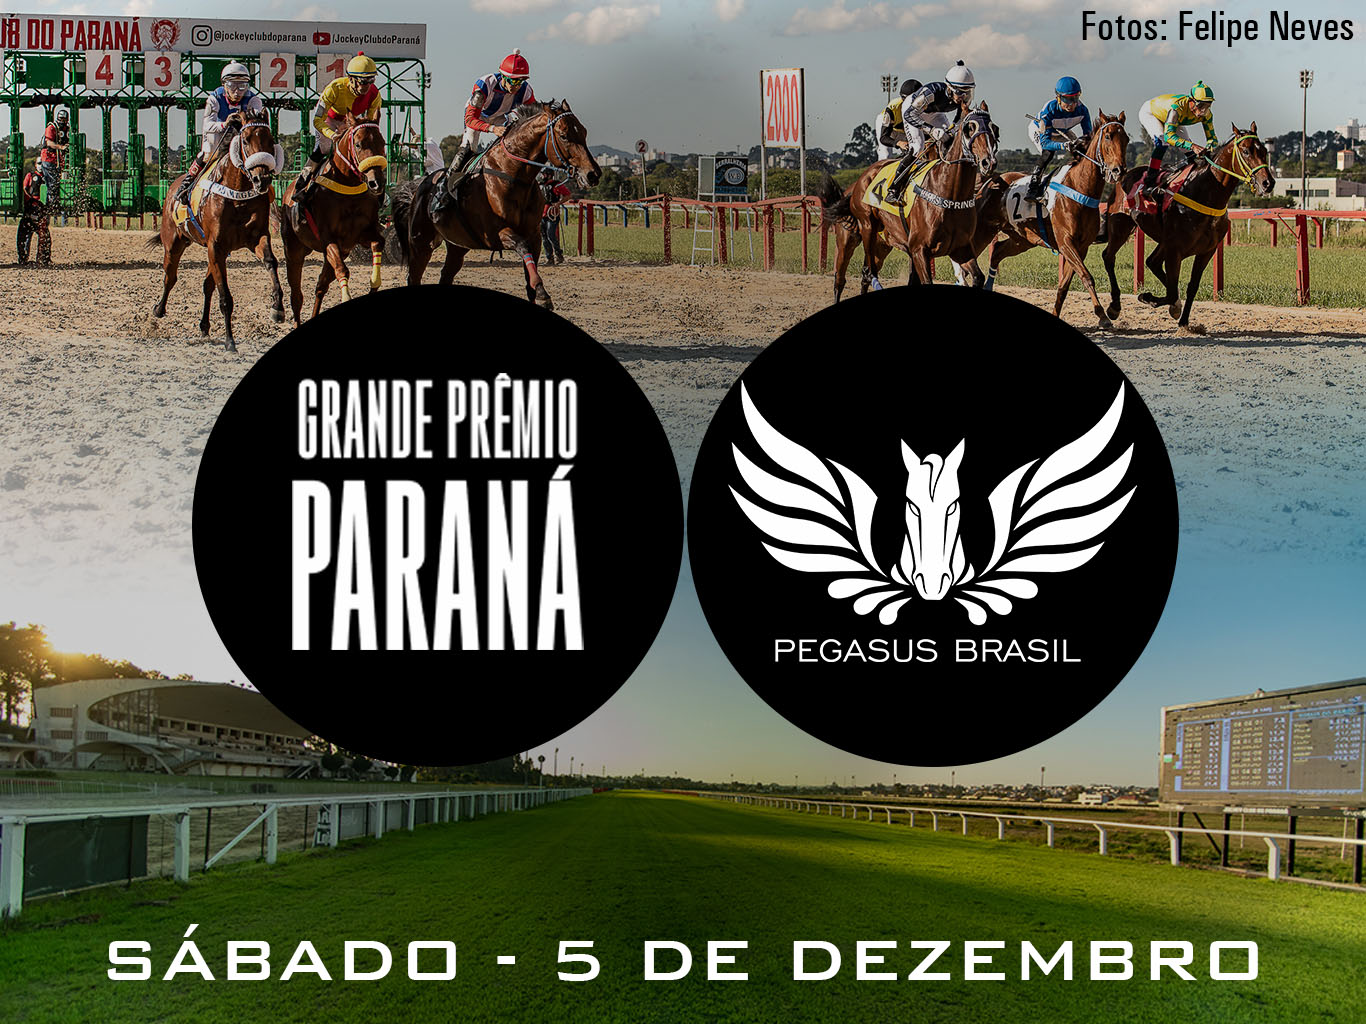 Festival do GP “Paraná” – (G3) será neste sábado